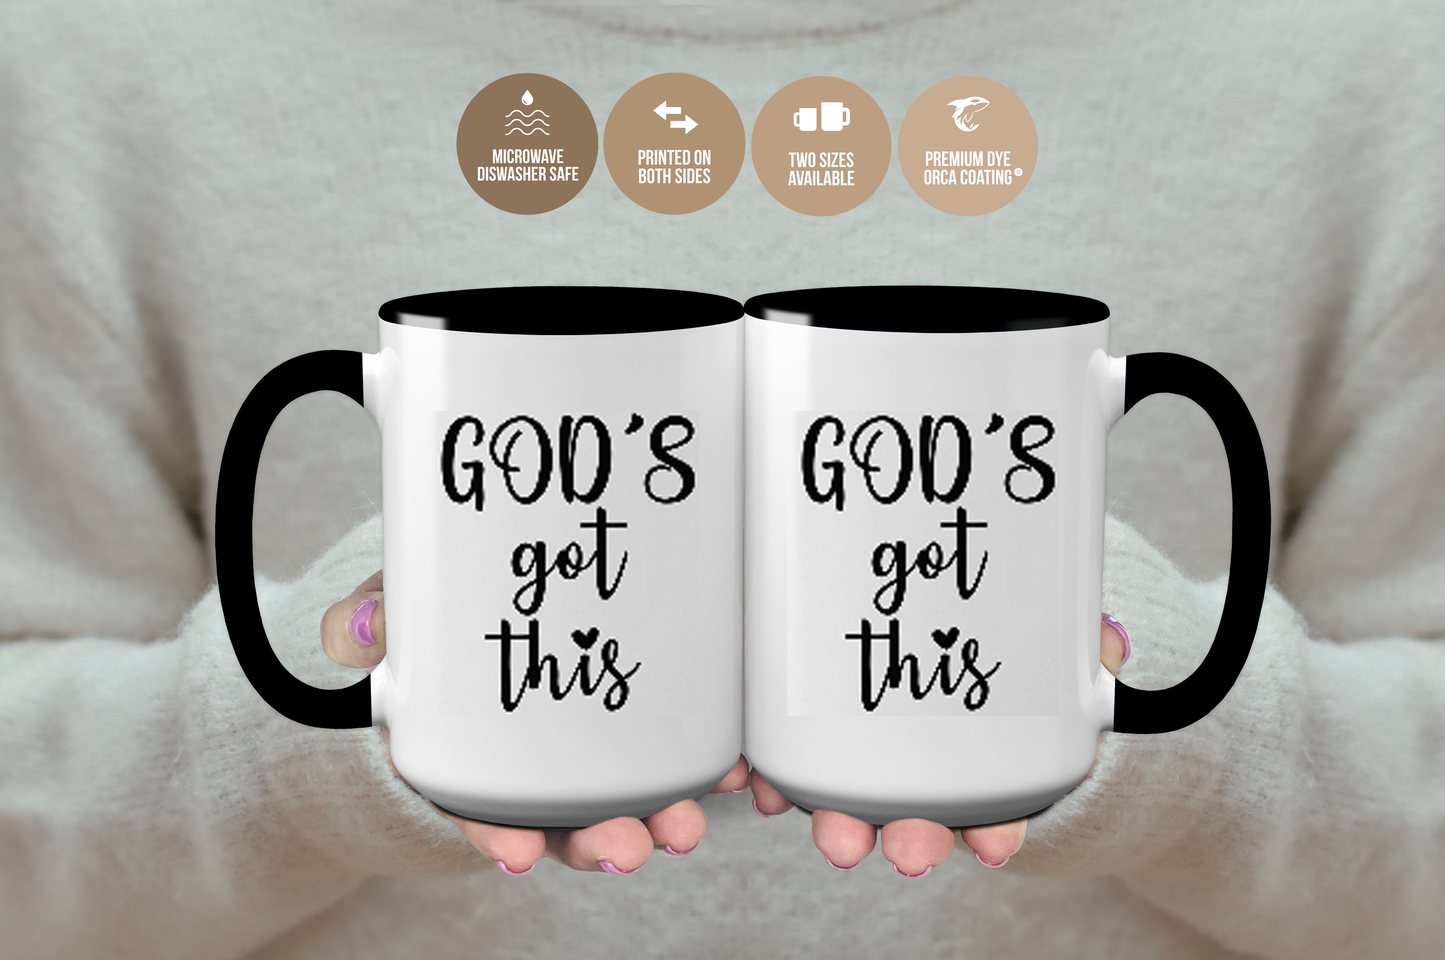 "God's Got This" Religious Inspired Mug